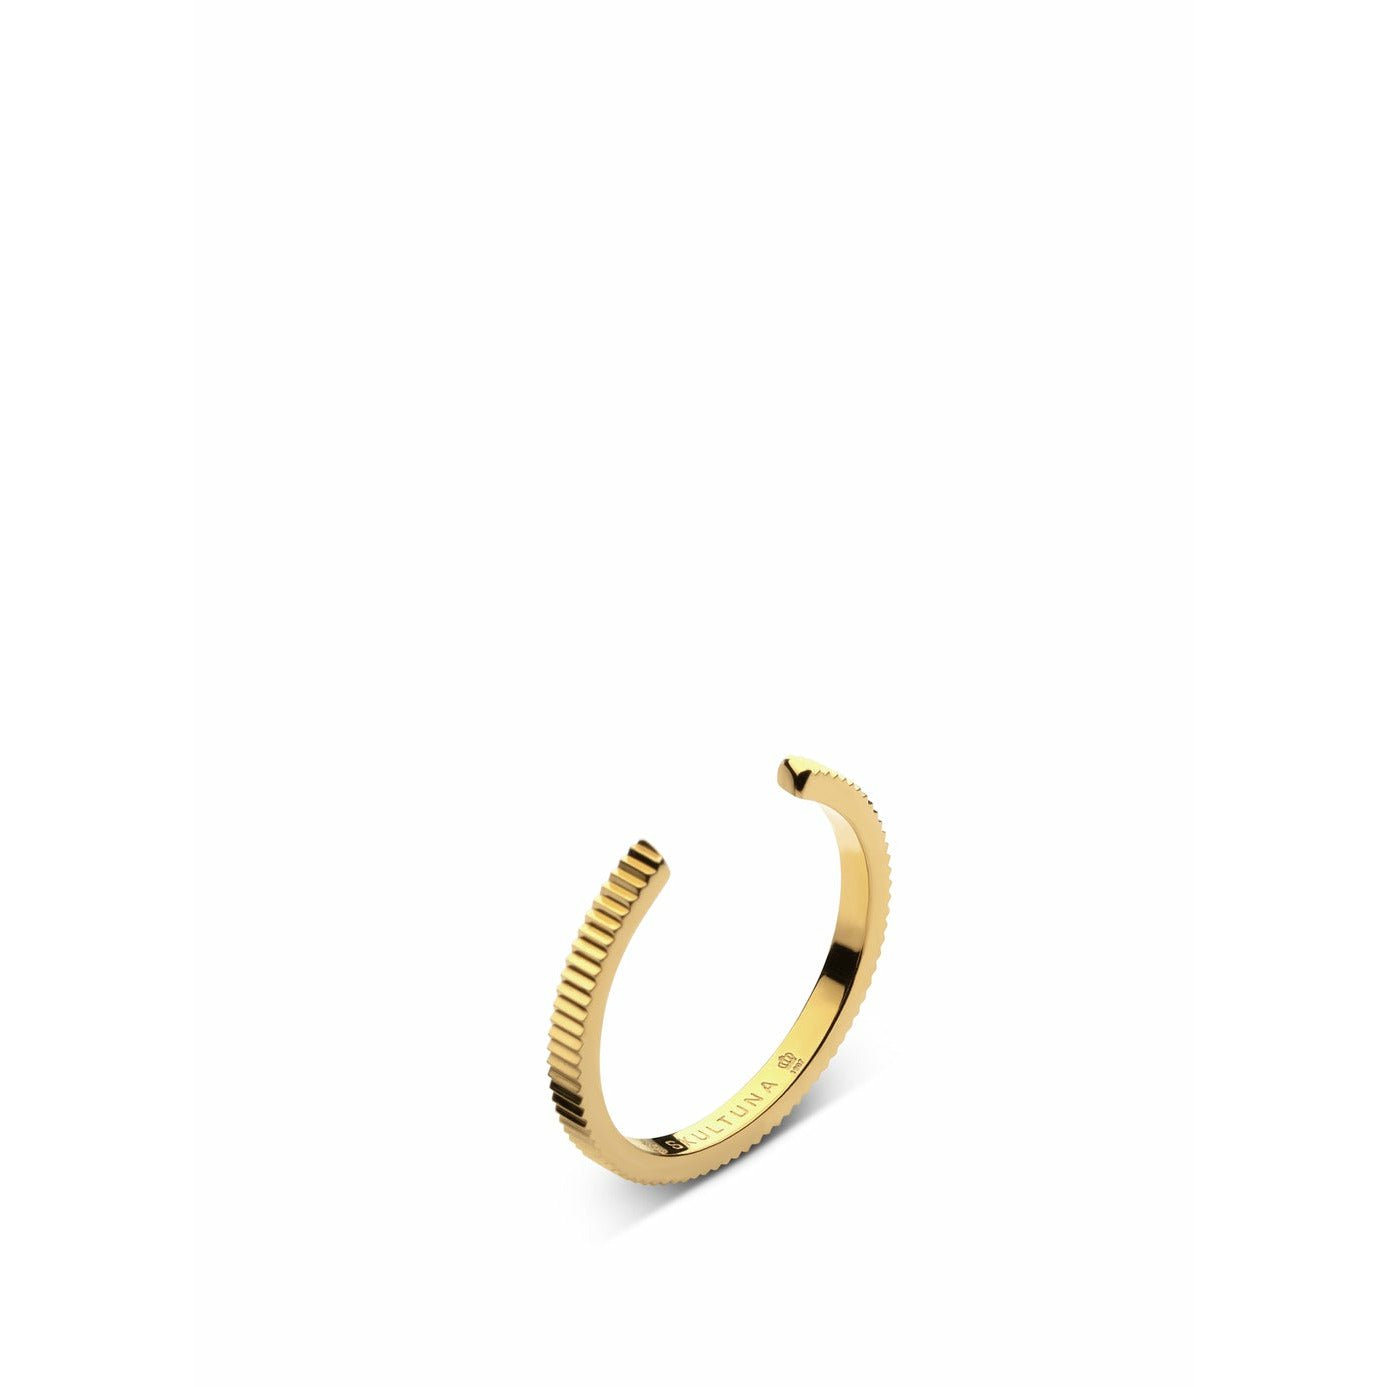 Szultuna żebrowana cienki pierścień mały 316 l stalowy złoto platowany, Ø1,6 cm